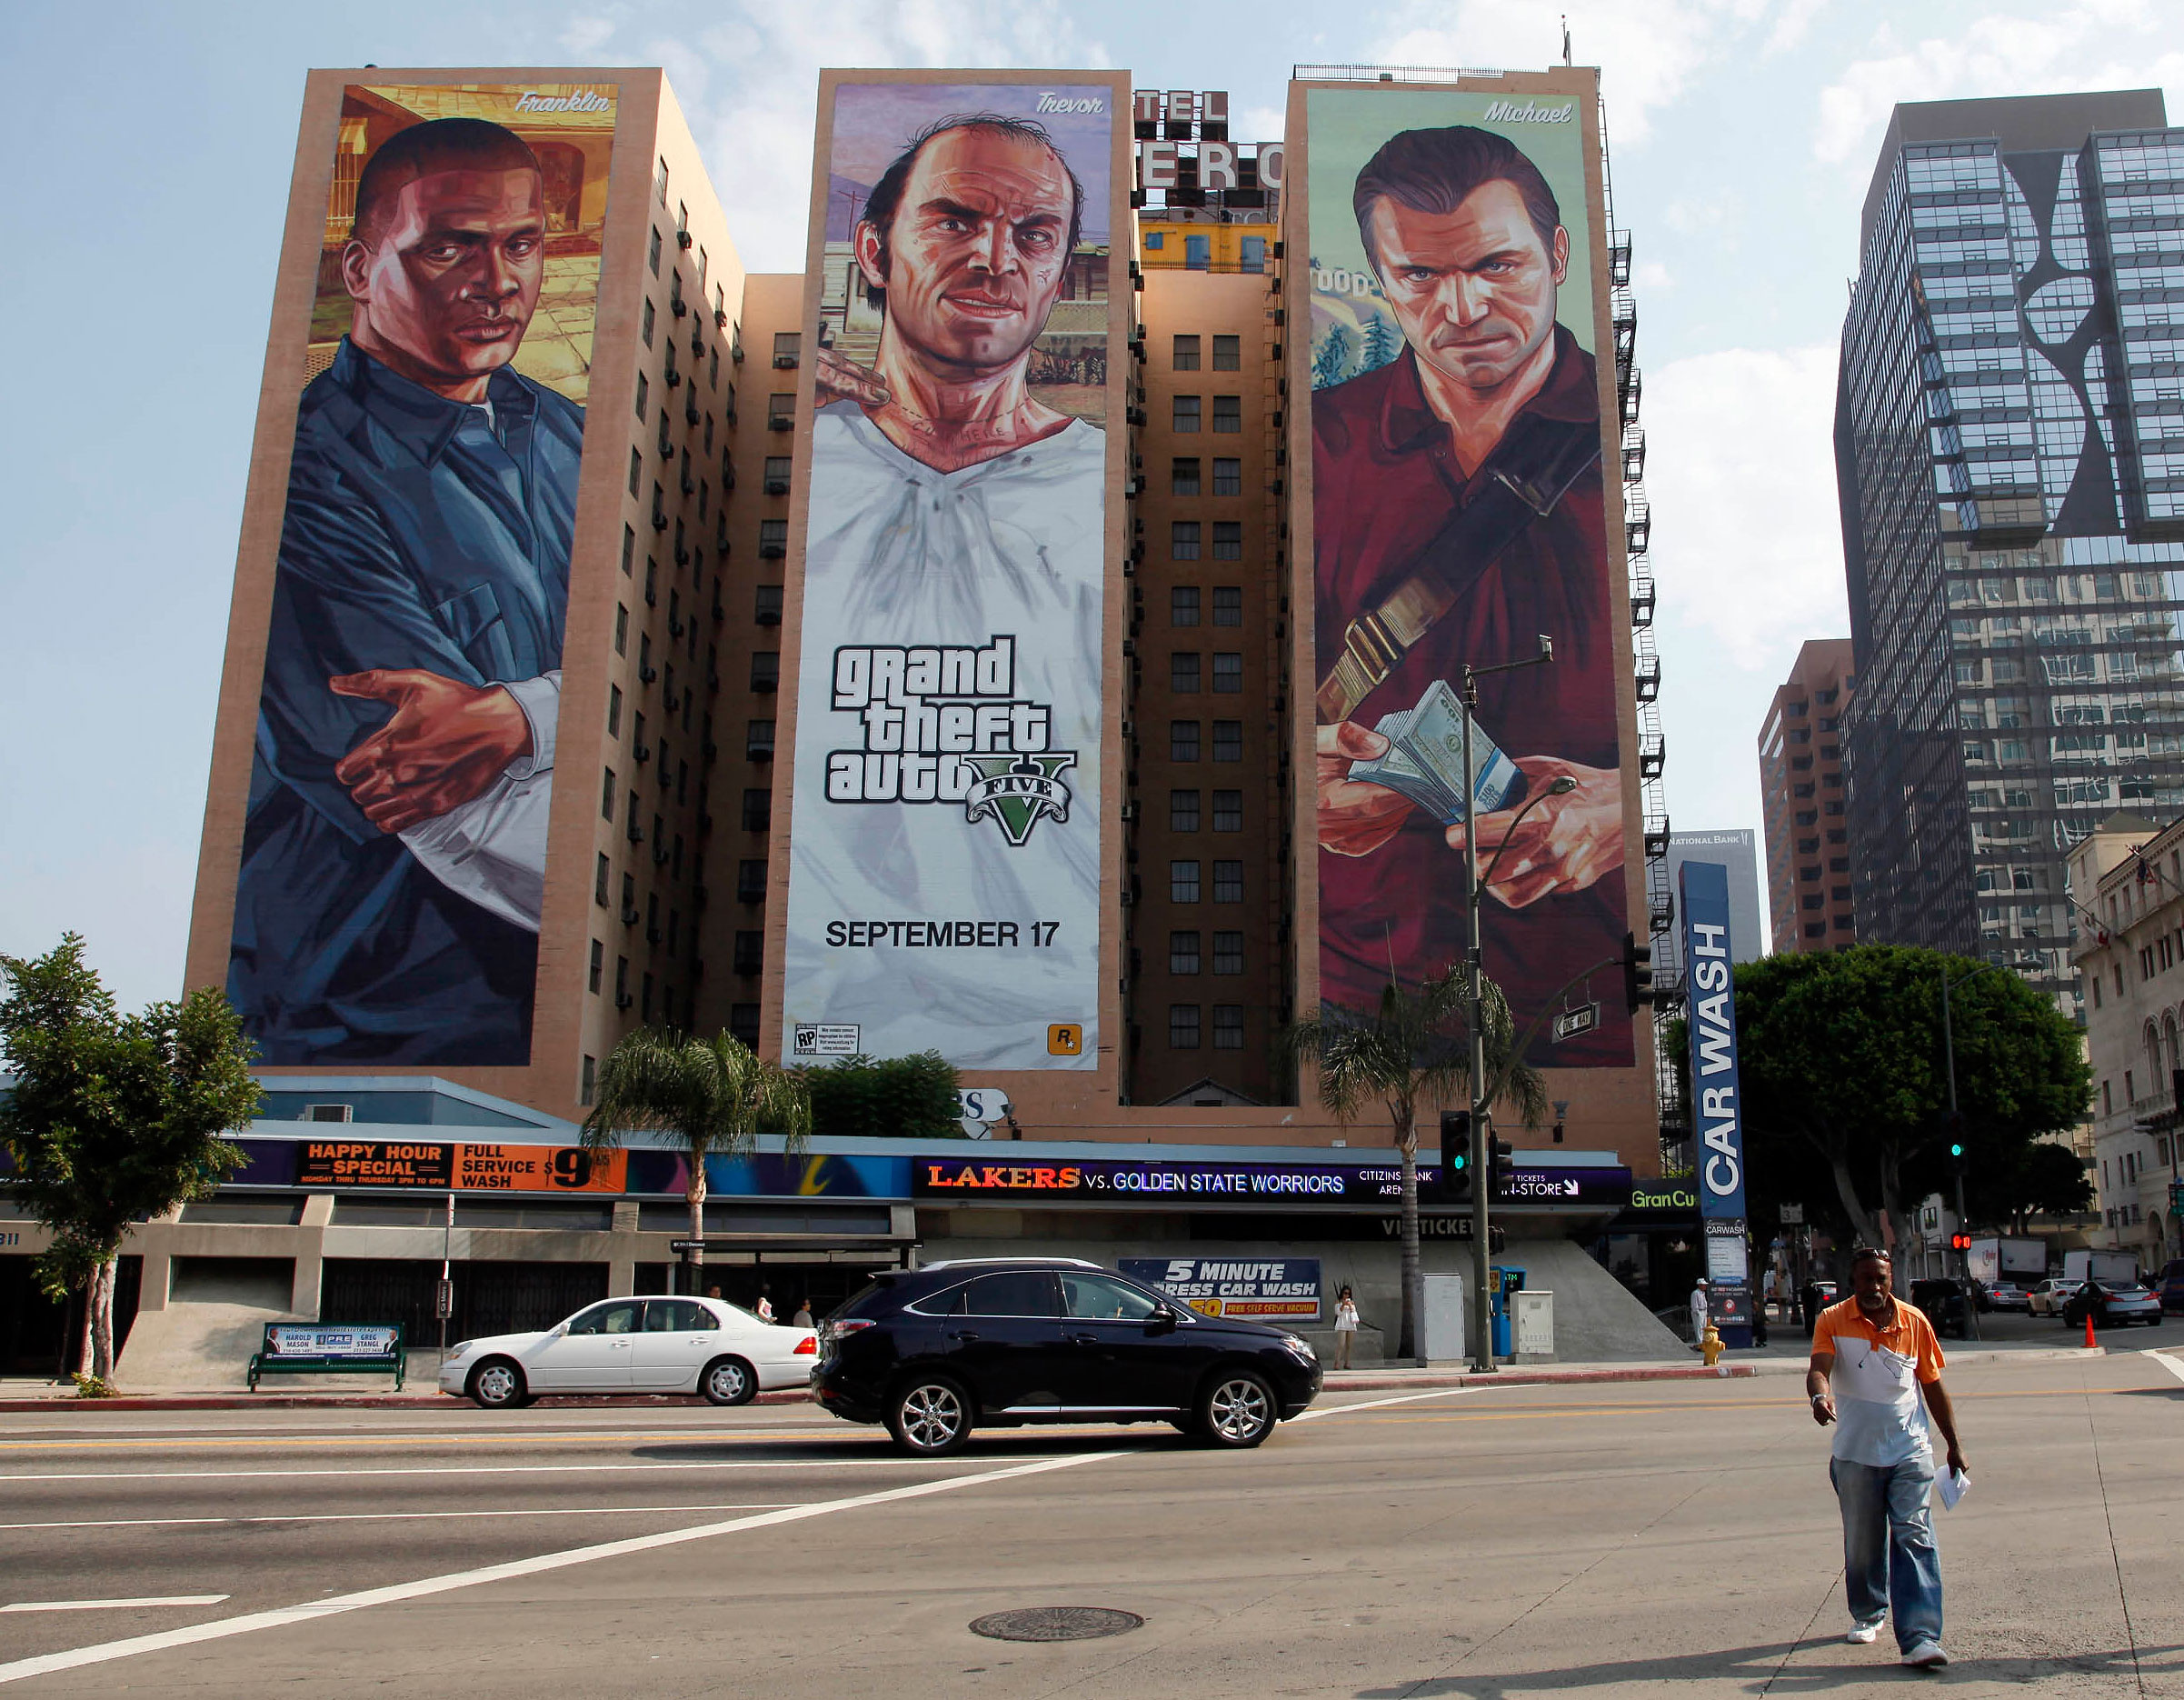 Реклама в играх россия. Реклама ГТА 5 В Лос Анджелесе. Рекламный баннер ГТА 5 Лос Анджелес. Билборд ГТА 5. Билборд с рекламой компьютерной игры.